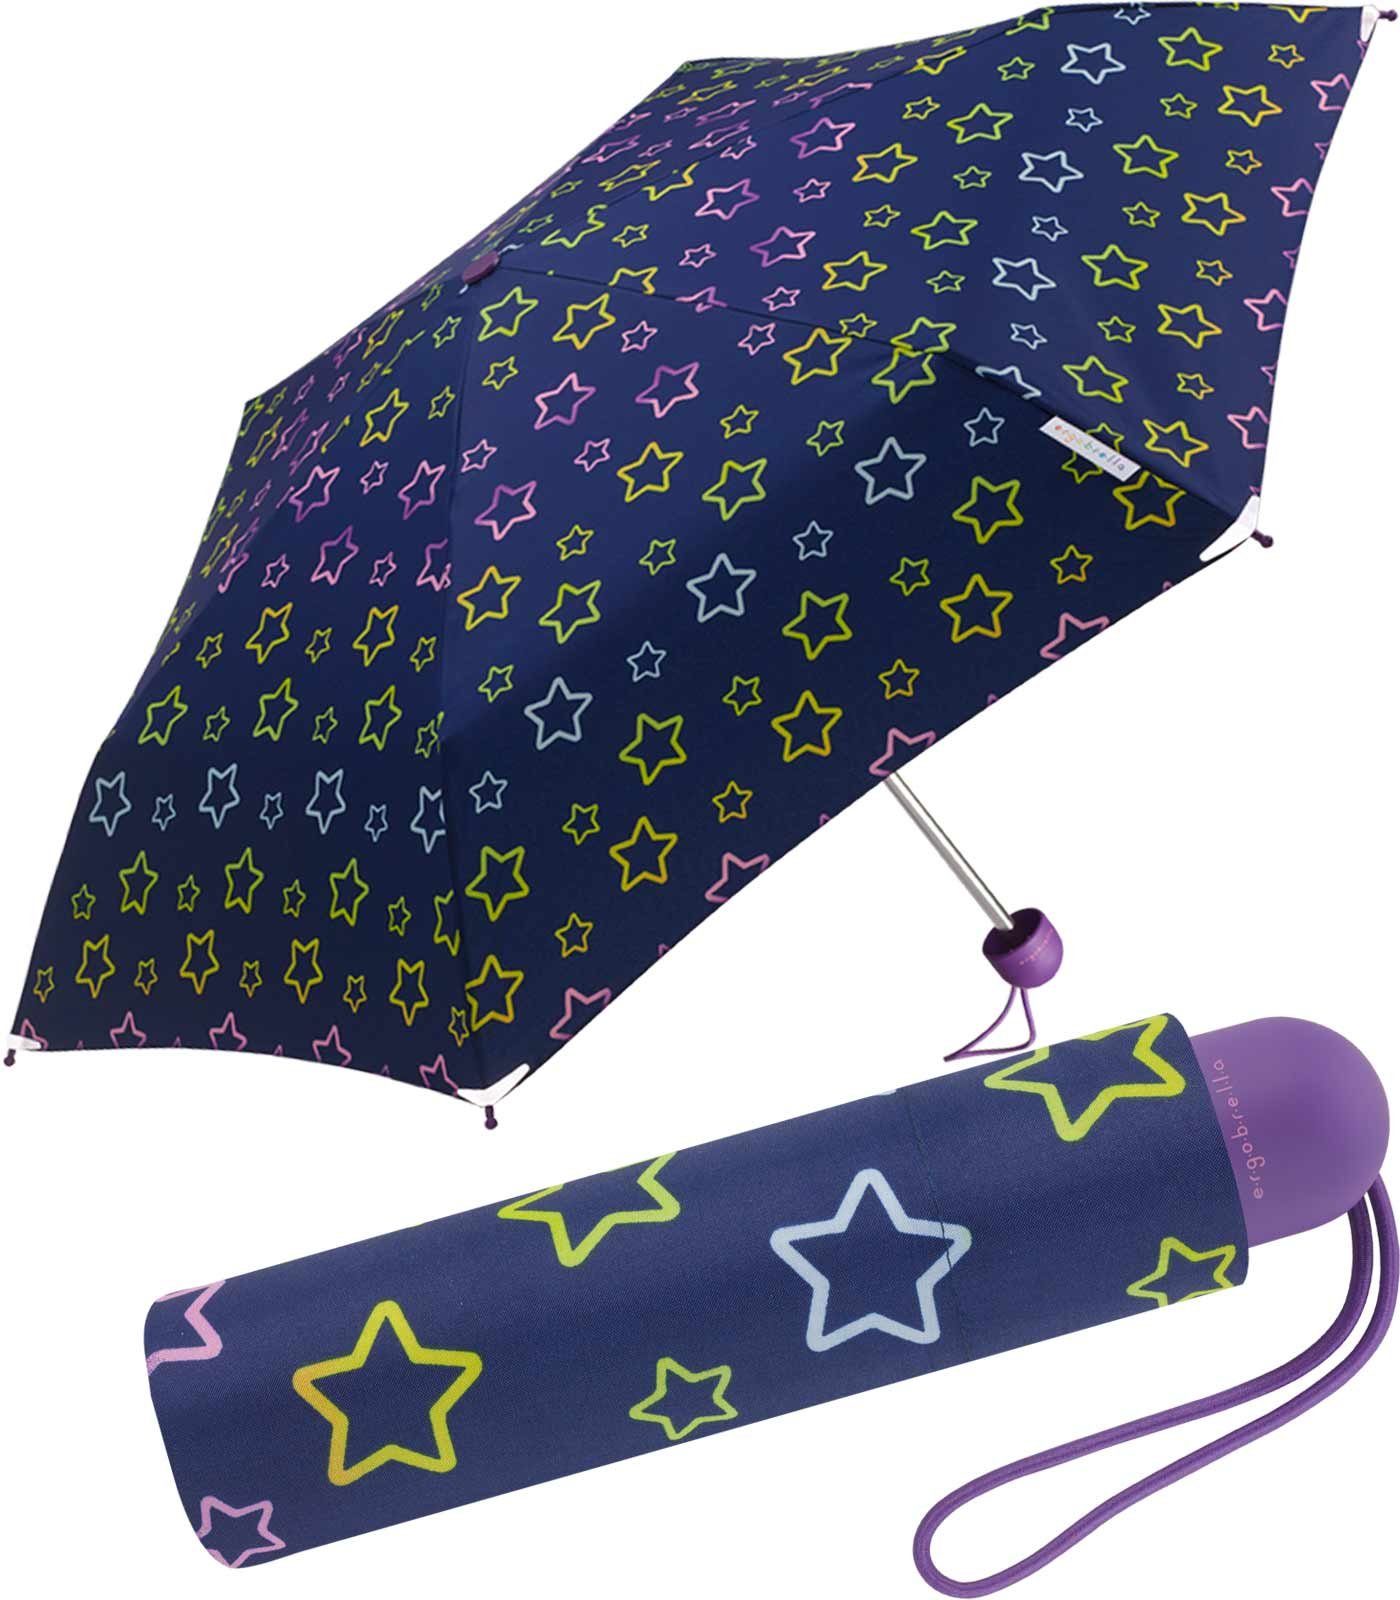 HAPPY RAIN Taschenregenschirm Mini Kinderschirm Basic reflektierend bedruckt, farbenfroh und fantasievoll